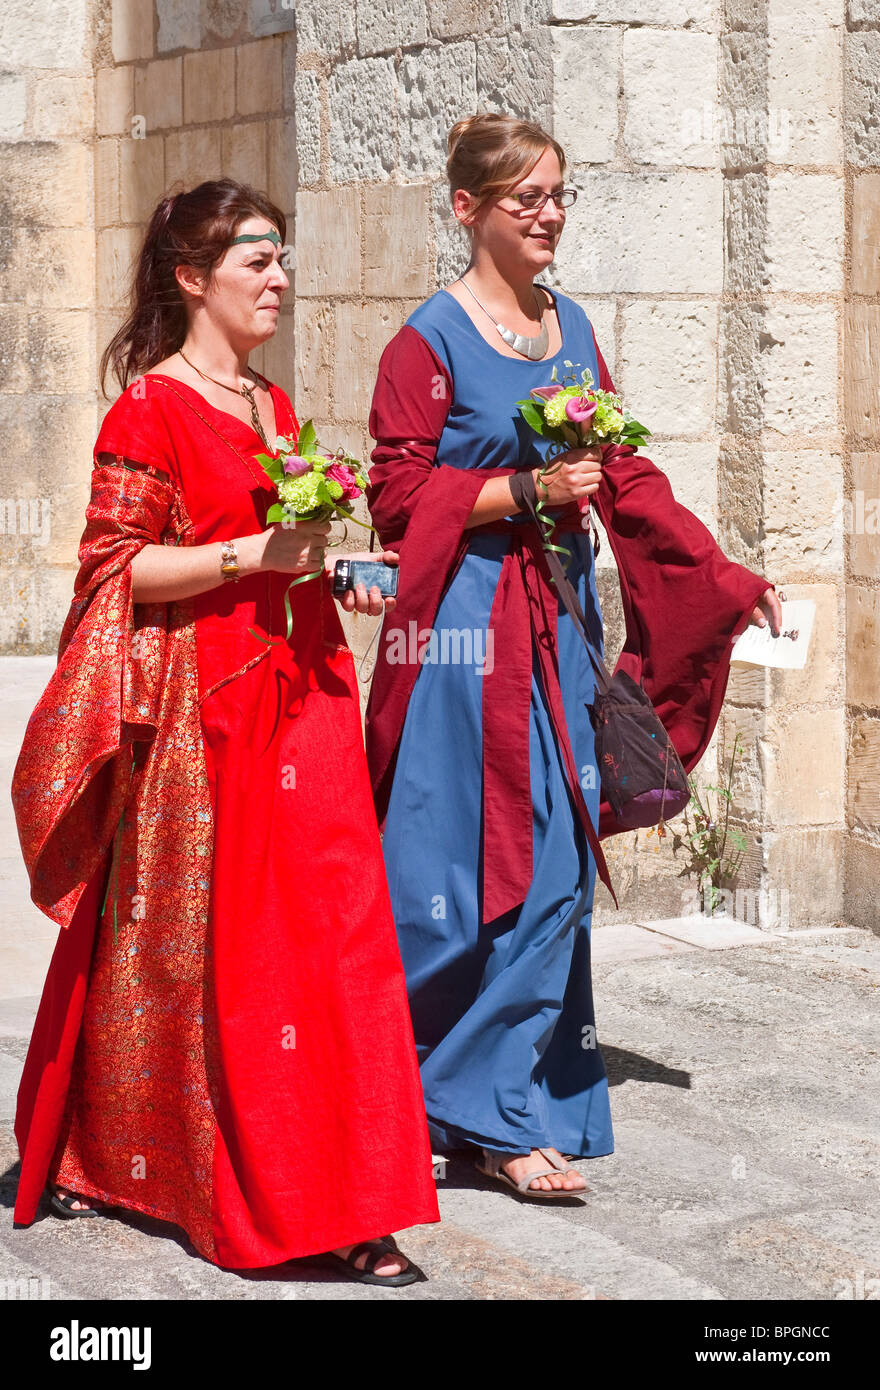 Deux femmes invités du mariage traditionnel en costume médiéval - Indre-et-Loire, France. Banque D'Images